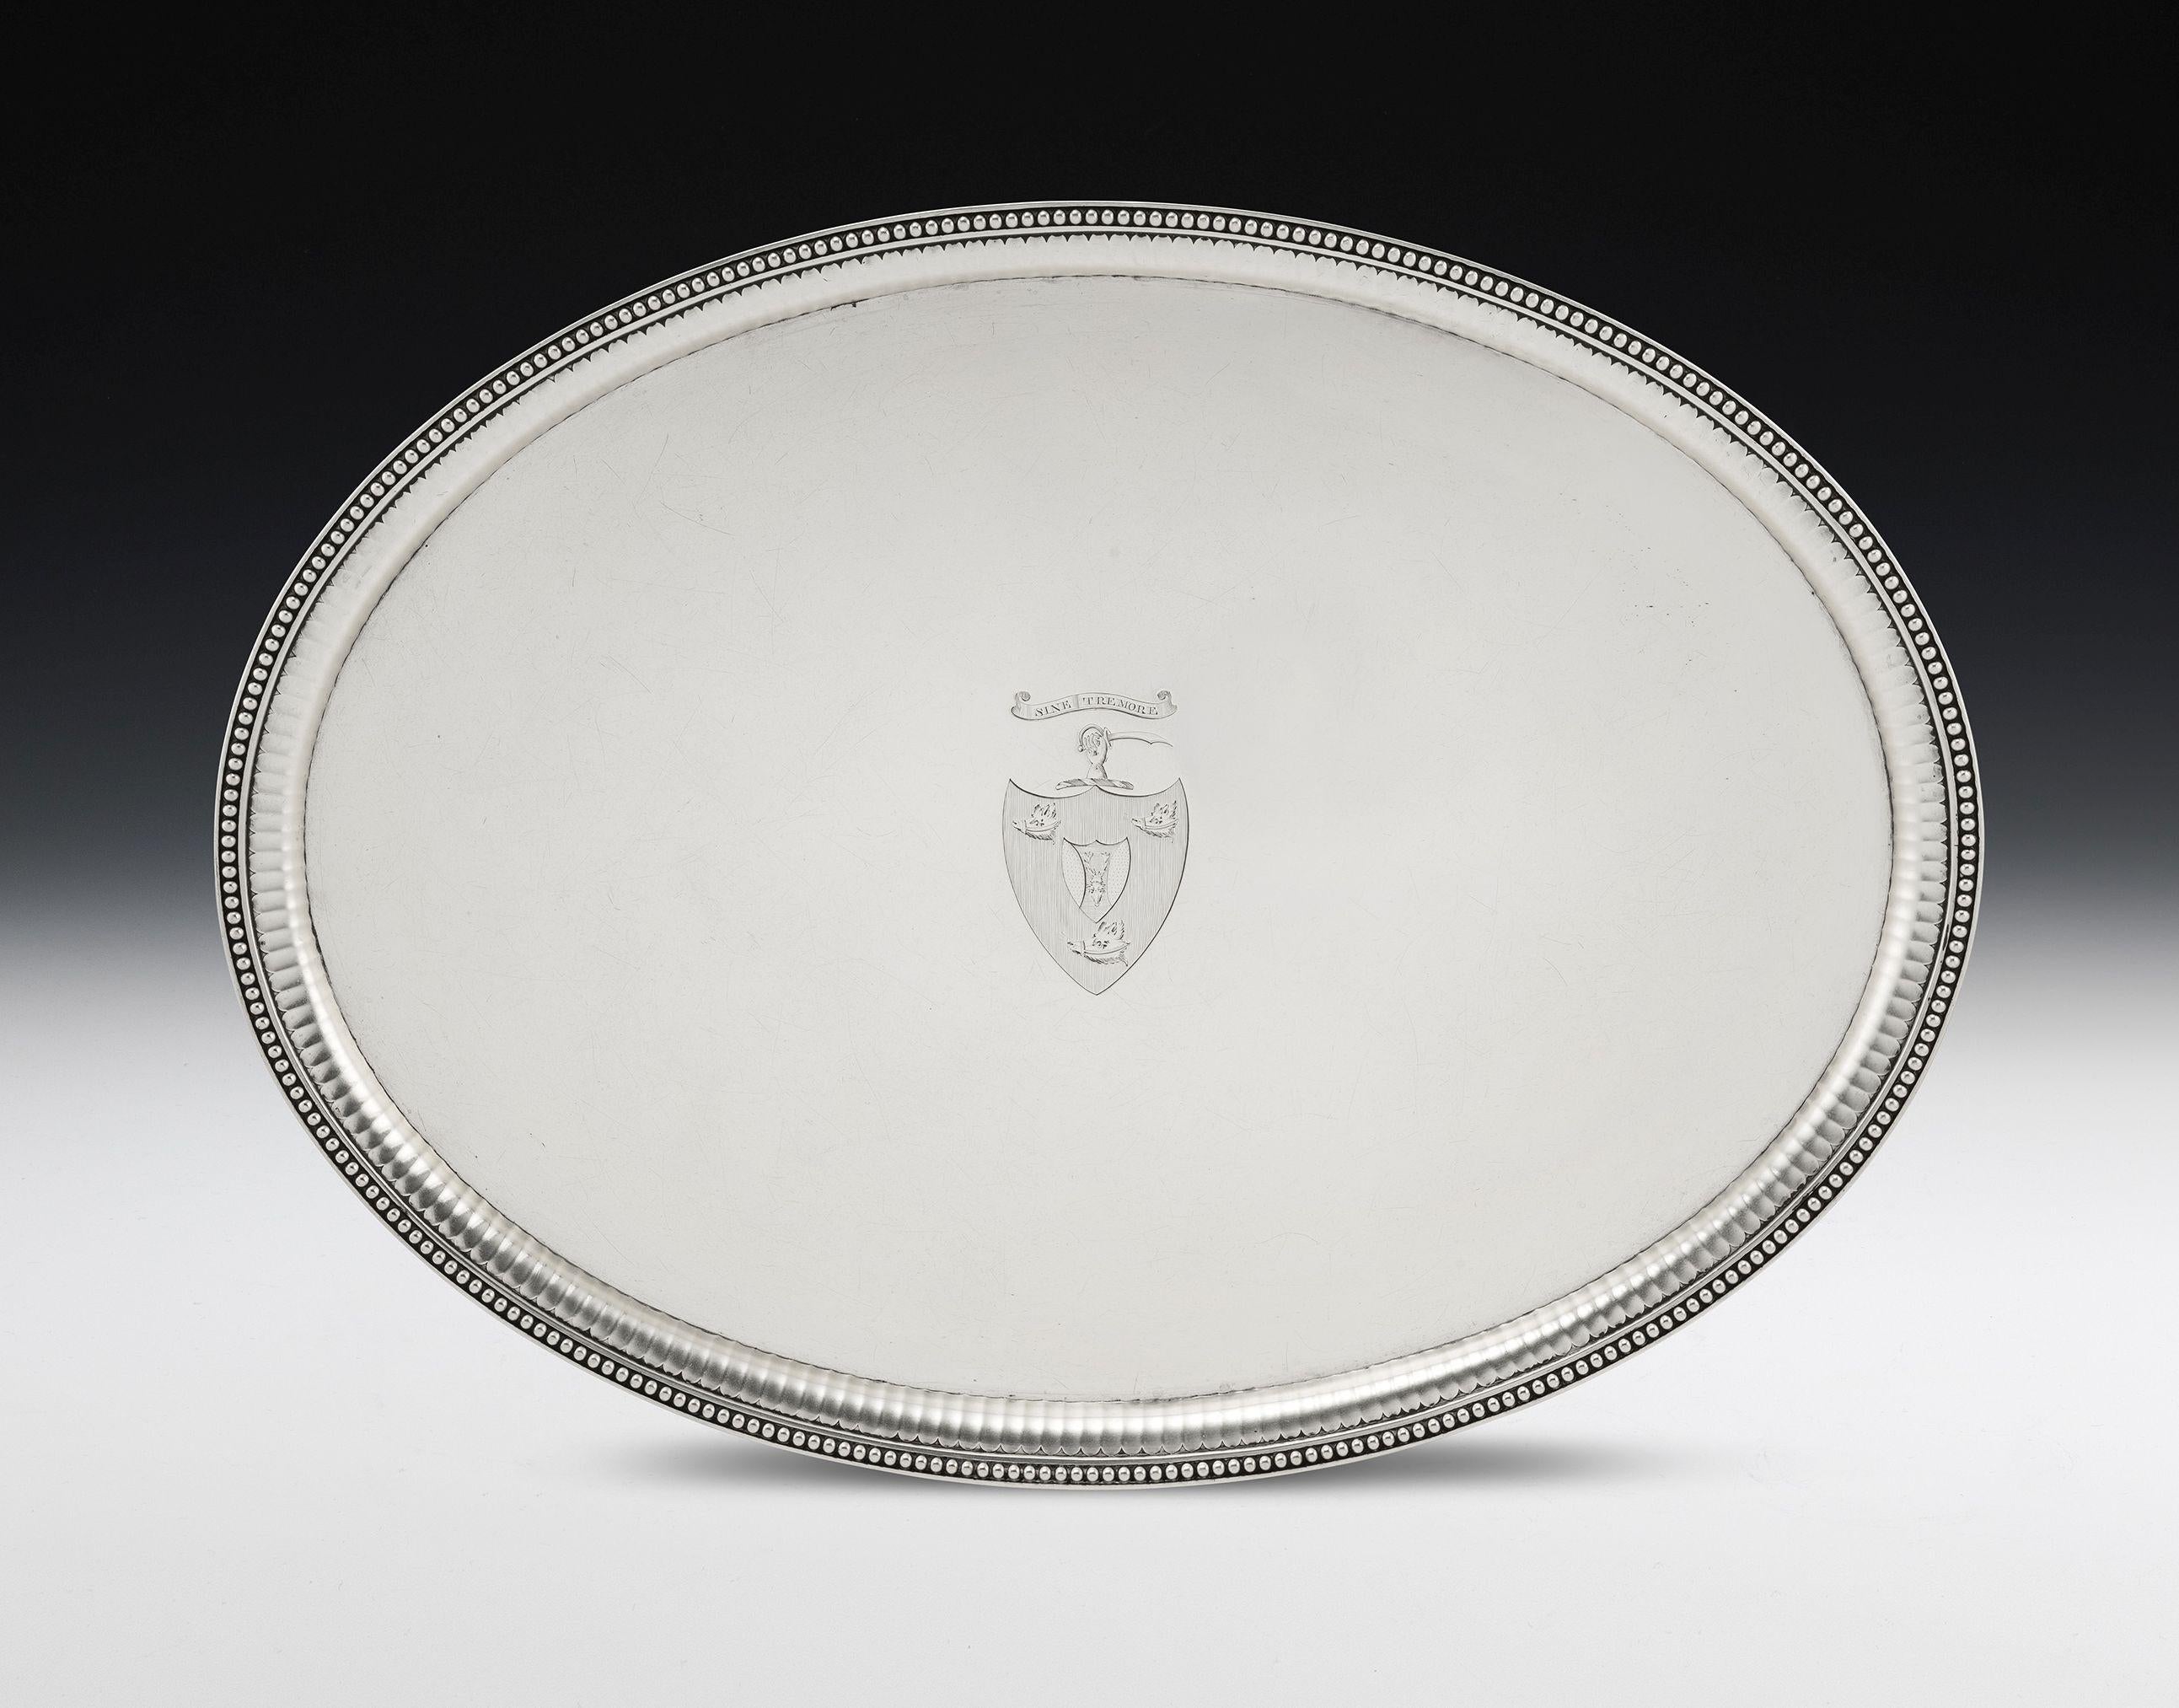 Dieser außergewöhnlich schöne antike Salver aus Sterlingsilber von George III. wurde 1781 in London von der königlichen Silberschmiede Wakelin & Taylor hergestellt. Der Salver hat eine ungewöhnliche Größe und eine ovale Form. Der erhabene Rand ist